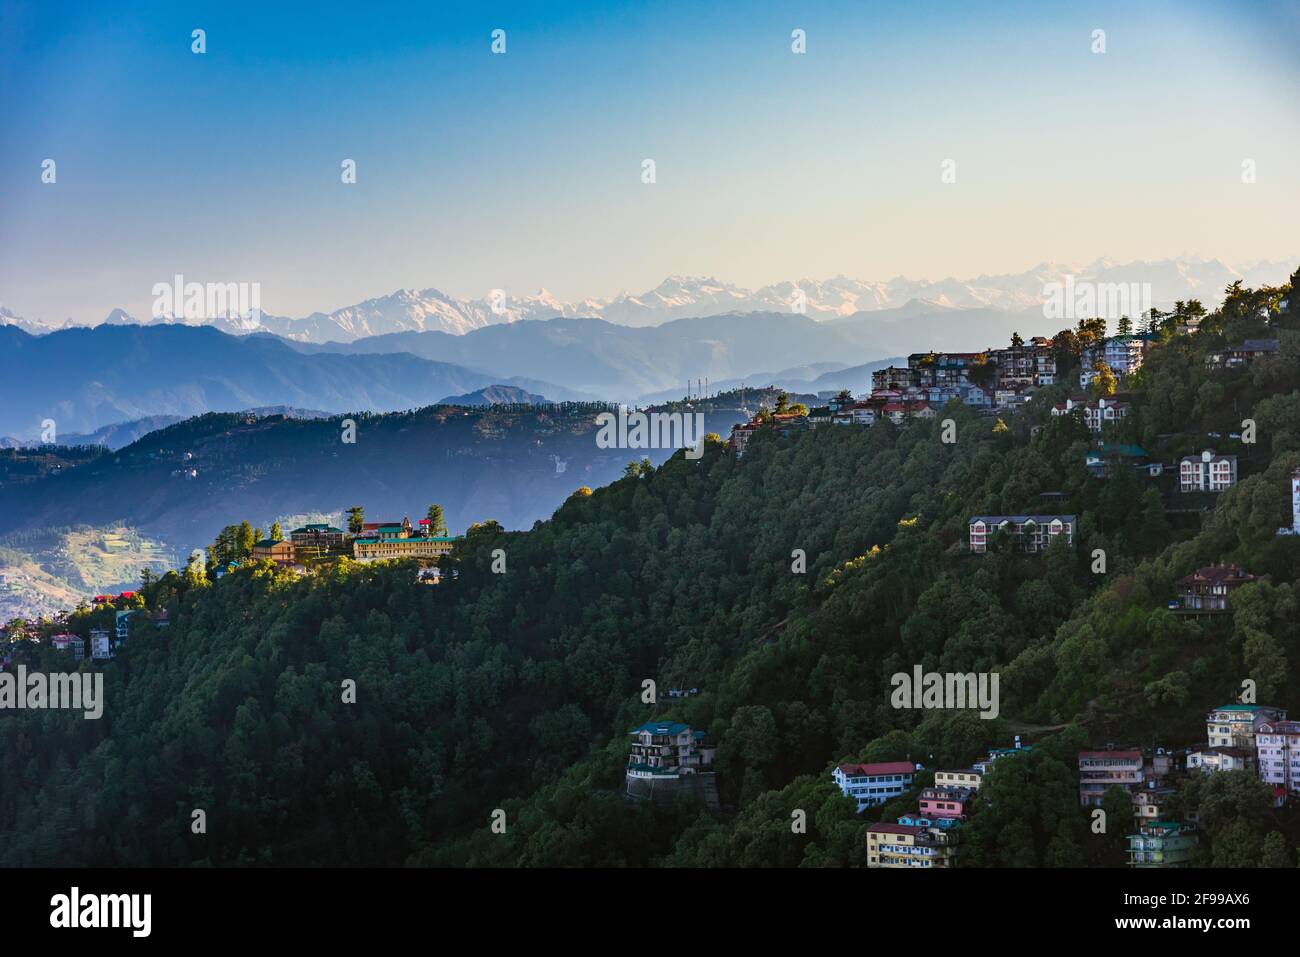 Splendida vista panoramica sulla città di Shimla, la capitale dello stato di Himachal Pradesh, situato nel mezzo di Himalaya dell'India. Foto Stock